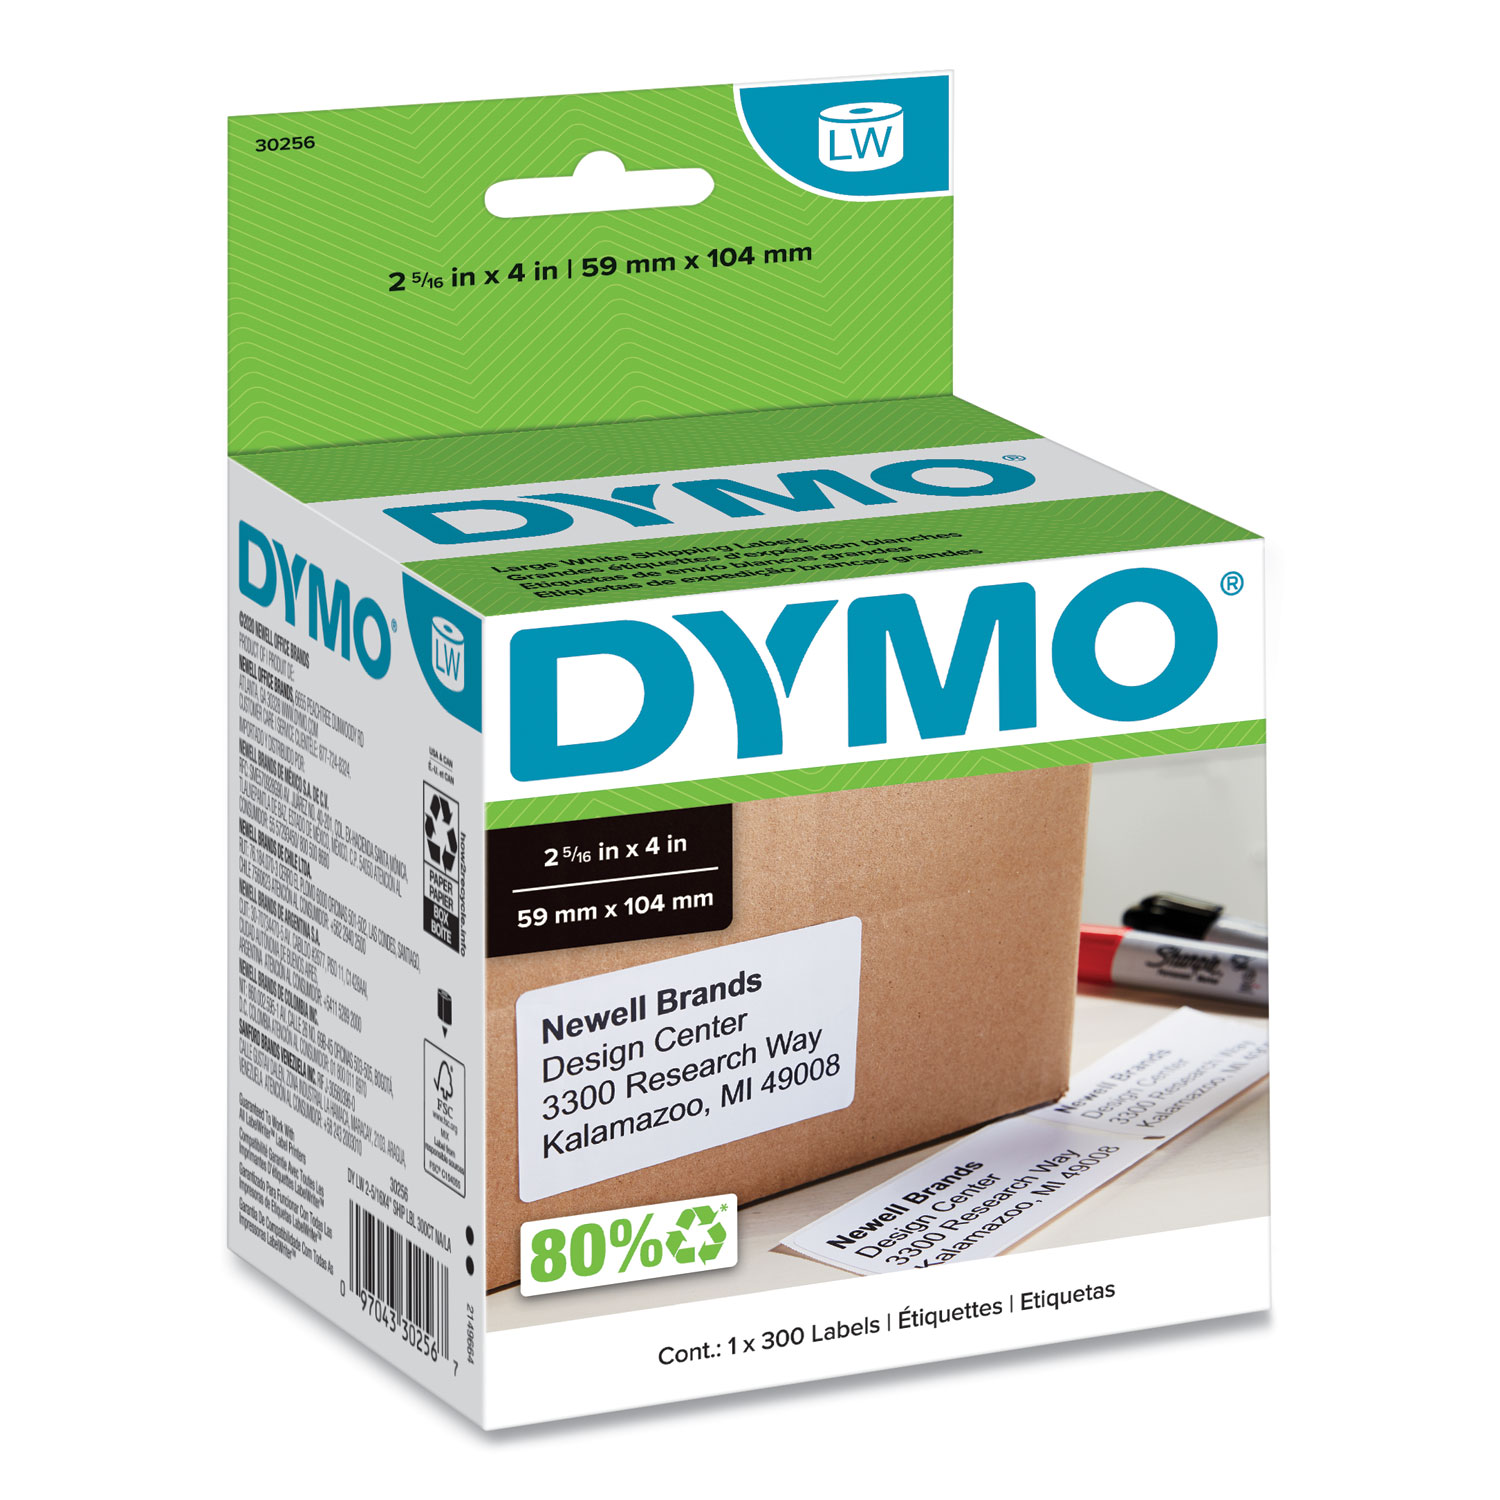 Dymo LabelWriter 450 Direct Thermal Printer Monochrome Label Print 51 lpm Mono USB - 3